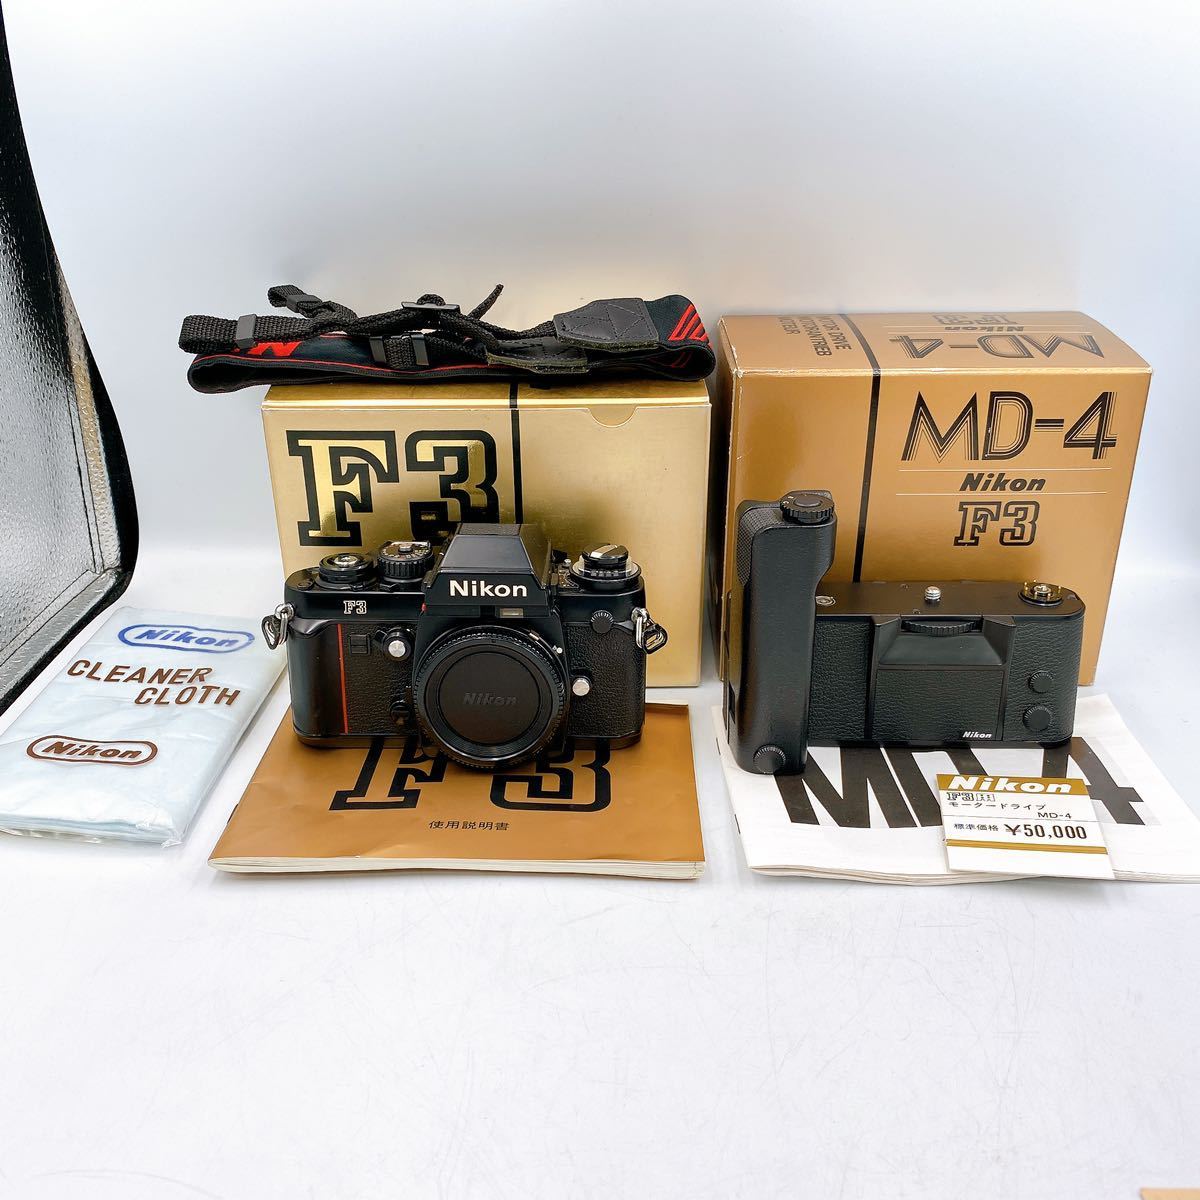 Nikon ニコン フィルムカメラ F3 MD-4 MOTOR DRIVE セット レトロ 名機 Fシリーズ ☆1円スタート_画像1